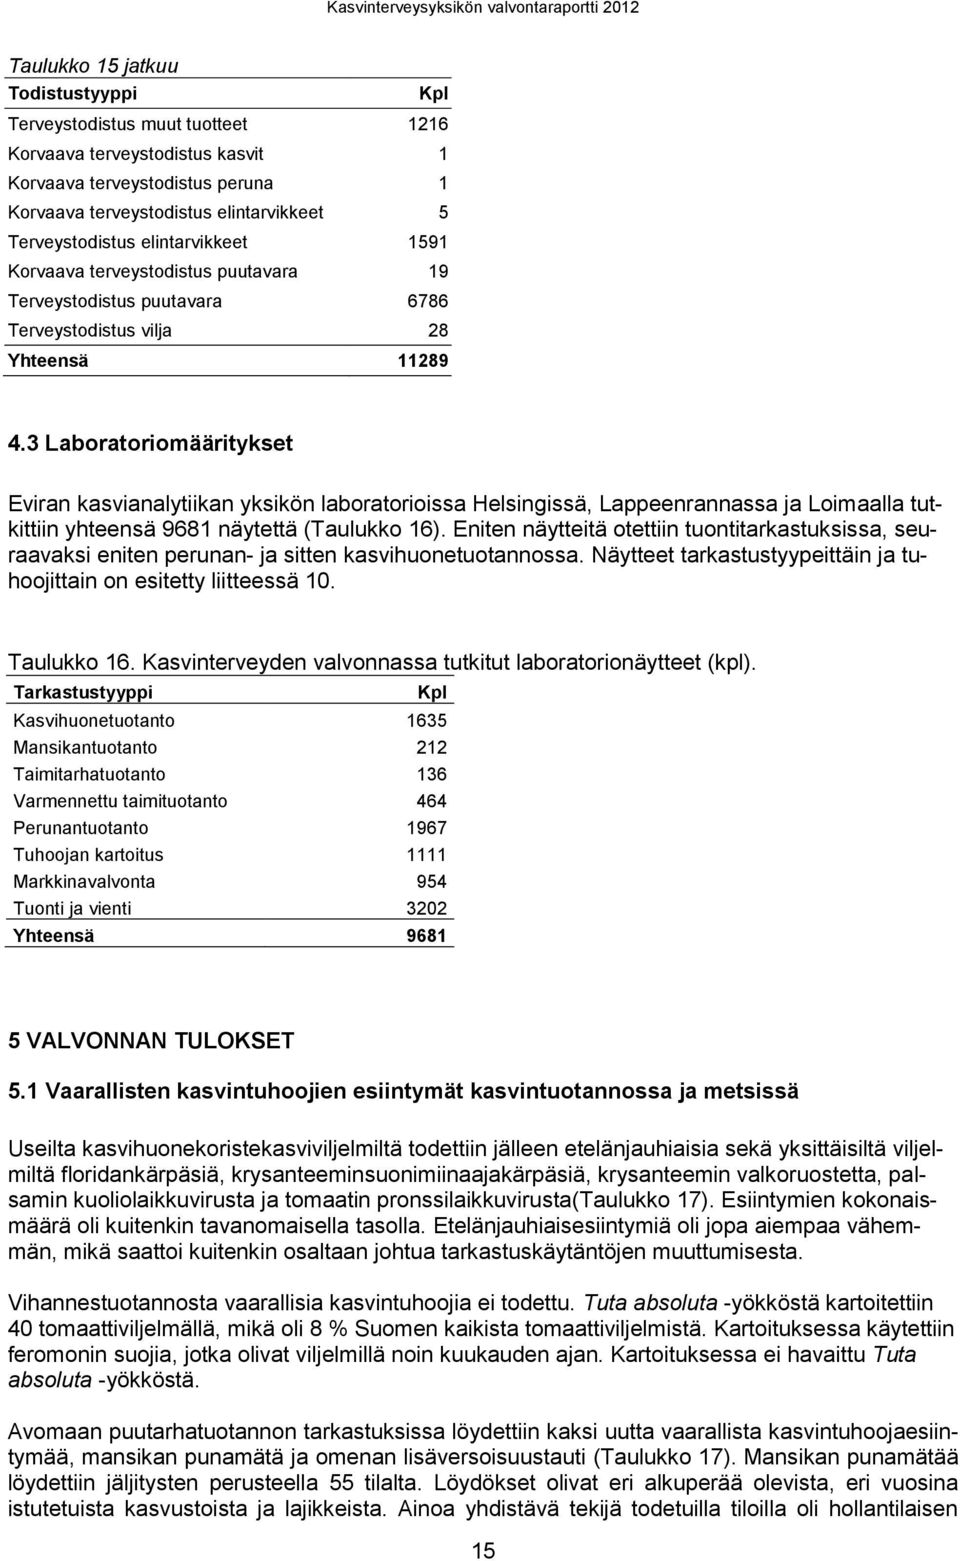 3 Laboratoriomääritykset Eviran kasvianalytiikan yksikön laboratorioissa Helsingissä, Lappeenrannassa ja Loimaalla tutkittiin yhteensä 9681 näytettä (Taulukko 16).